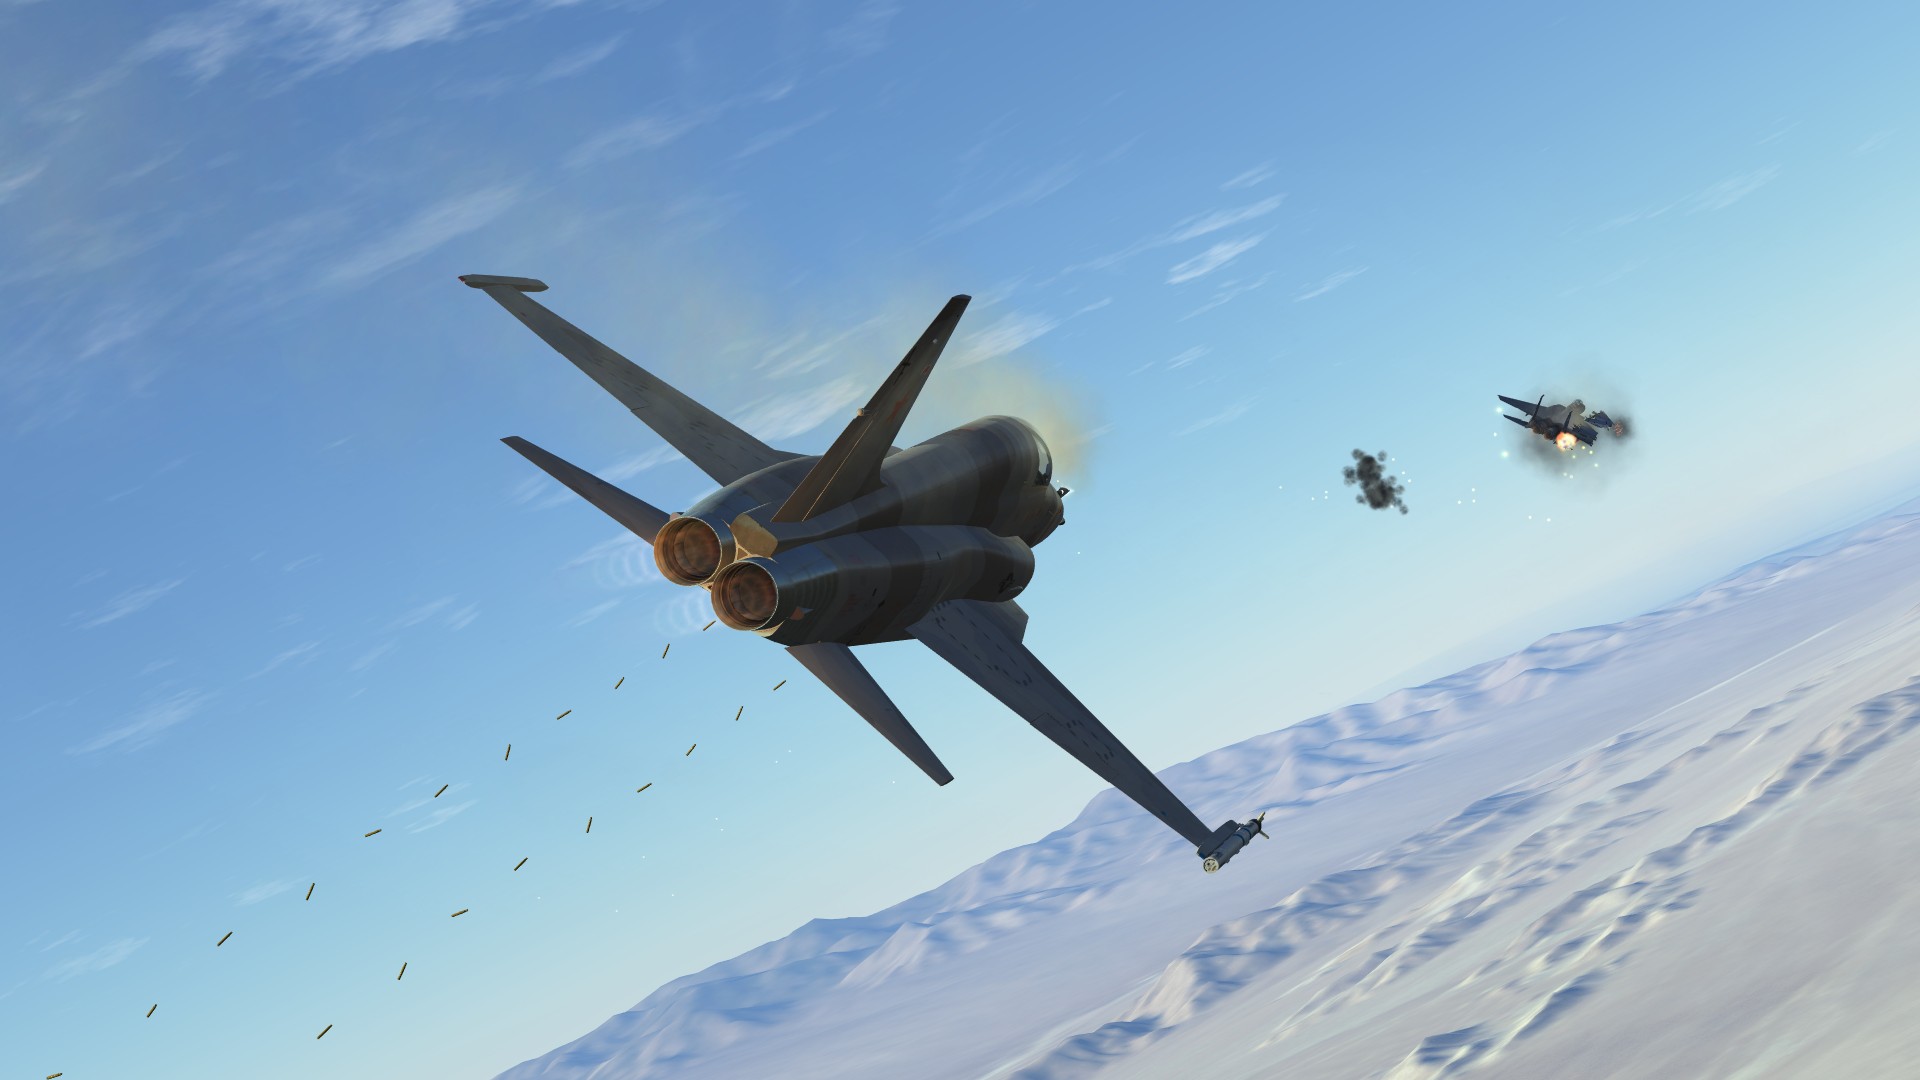 air combat maneuvers